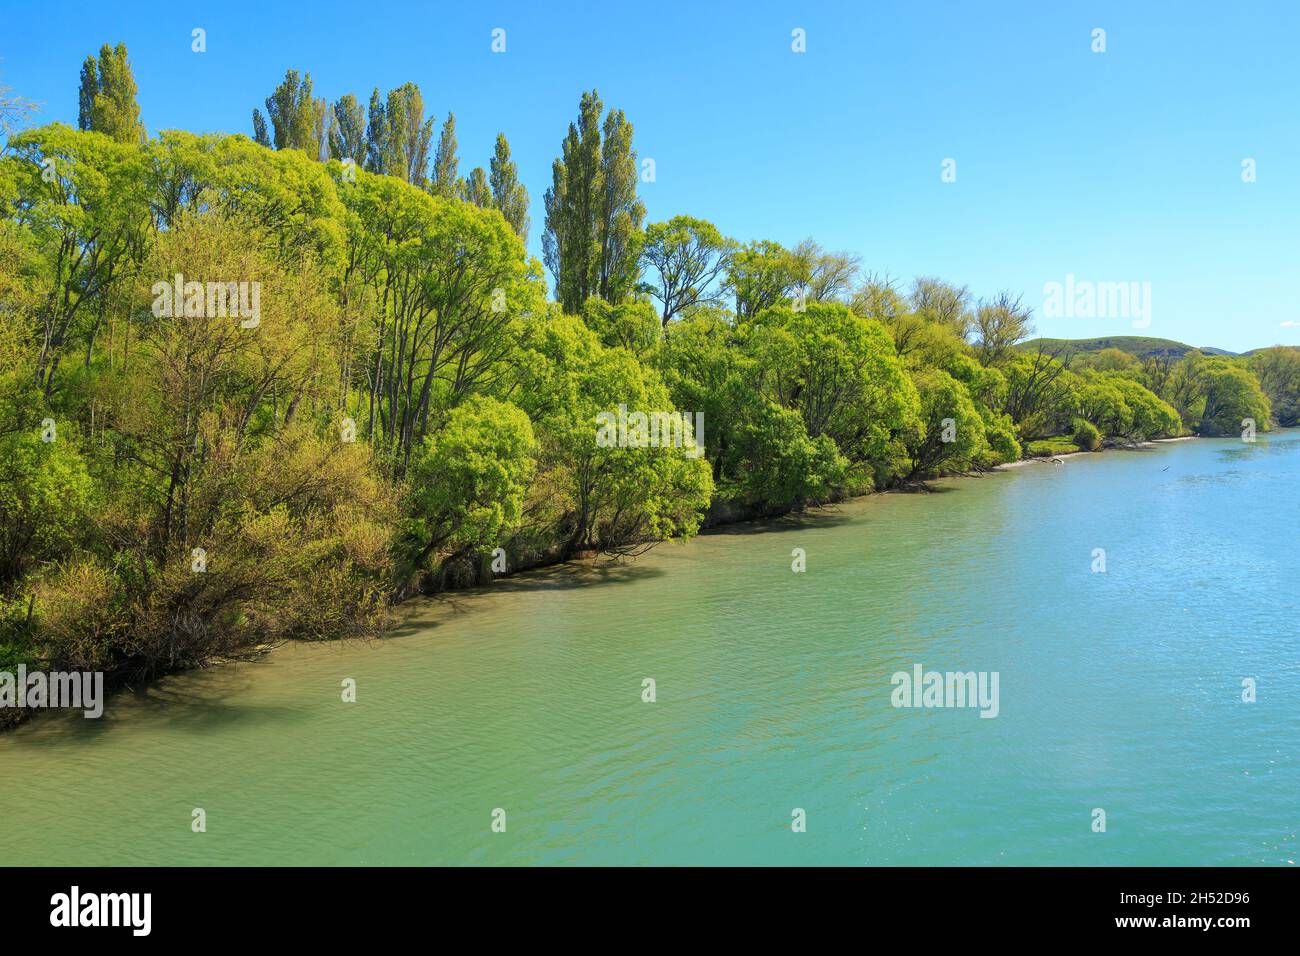 Am Ufer des Uawa River in der Nähe der Tolaga Bay, Neuseeland, wachsen Weidenbäume mit leuchtend grünen Frühlingsbäumen Stockfoto